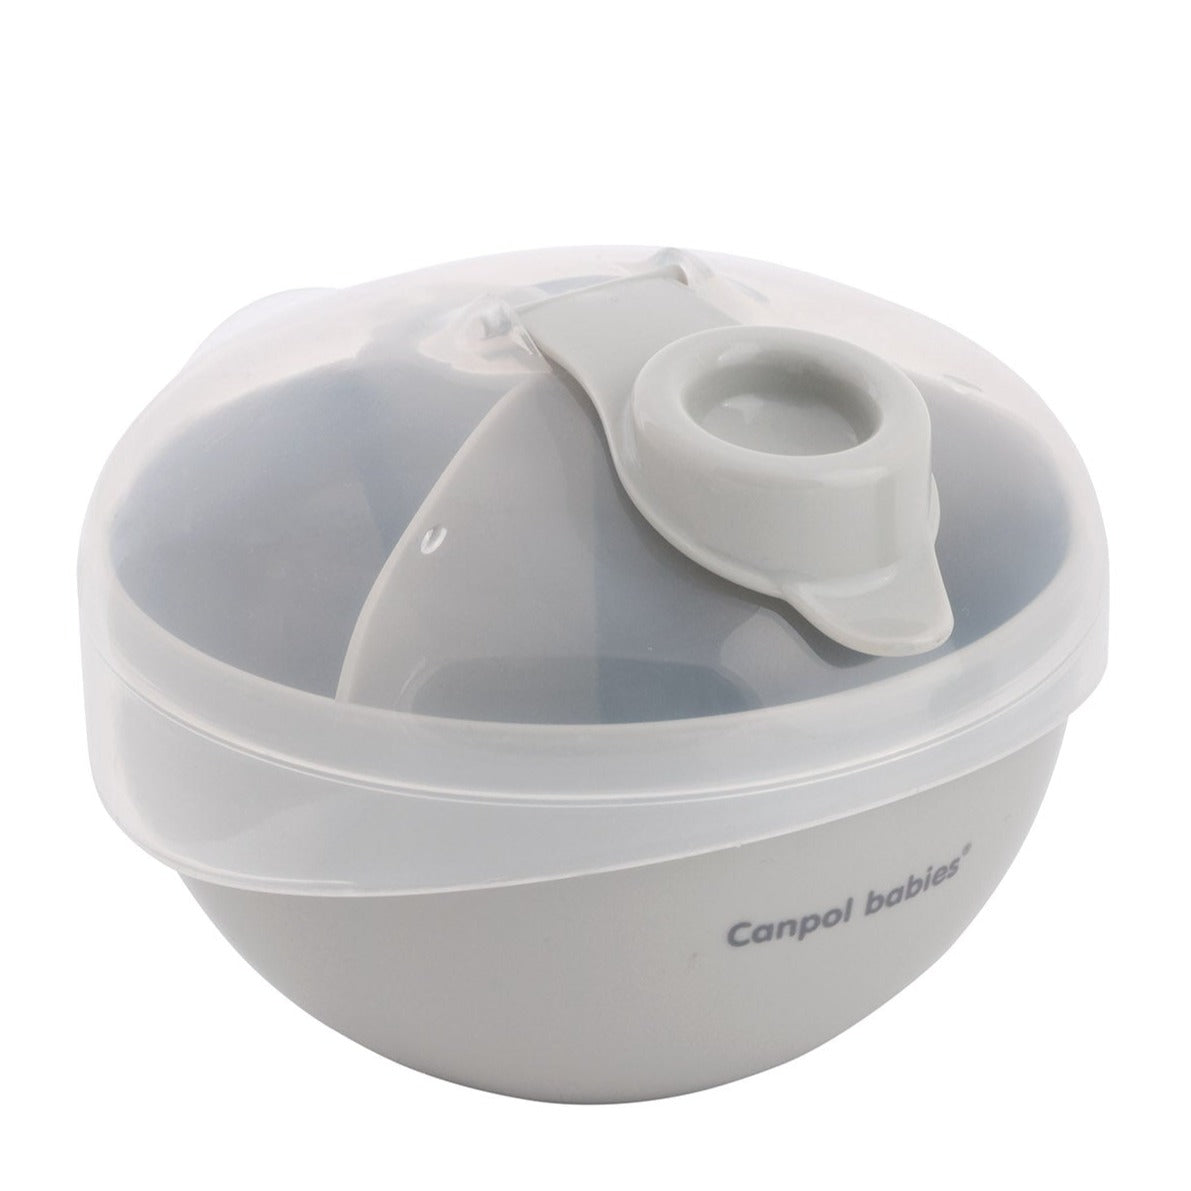 Canpol Babies: Dispensateur de lait en poudre Dispensateur de lait en poudre